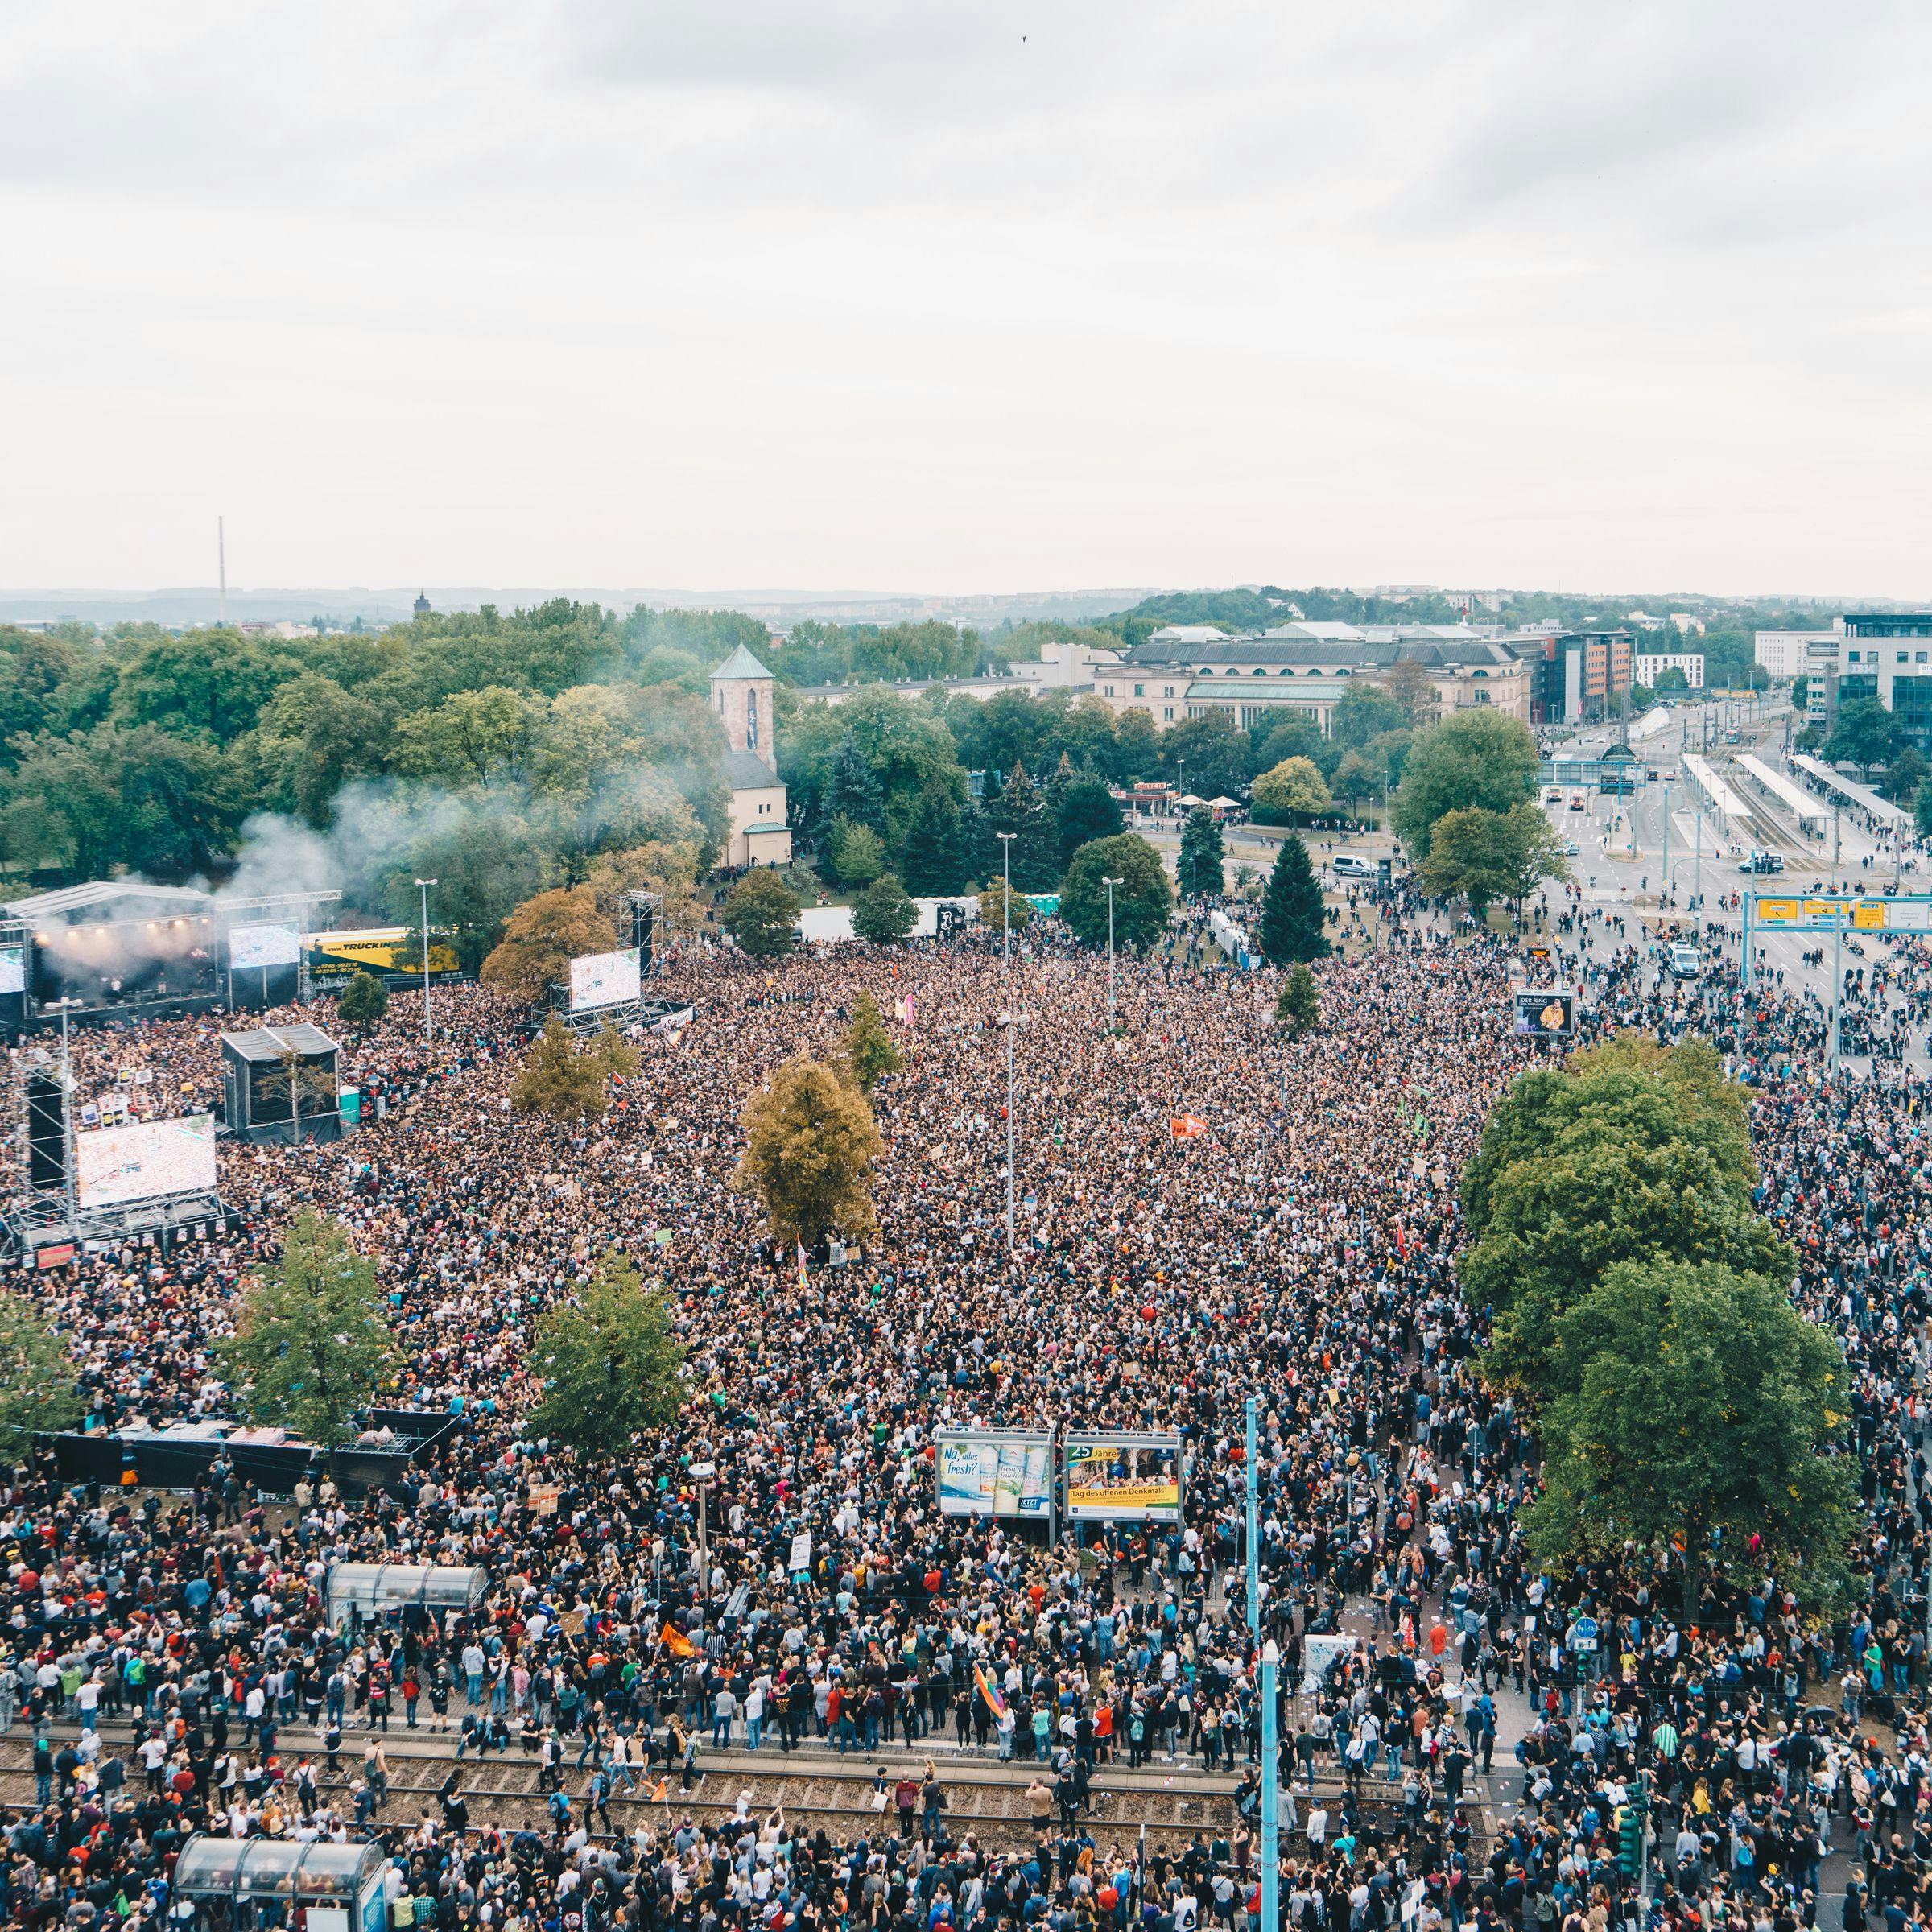 На фотографии изображен КОСМОС 2018, где толпа людей (снятая сверху) полностью заполняет пространство перед сценой. Прилегающие улицы также переполнены людьми.